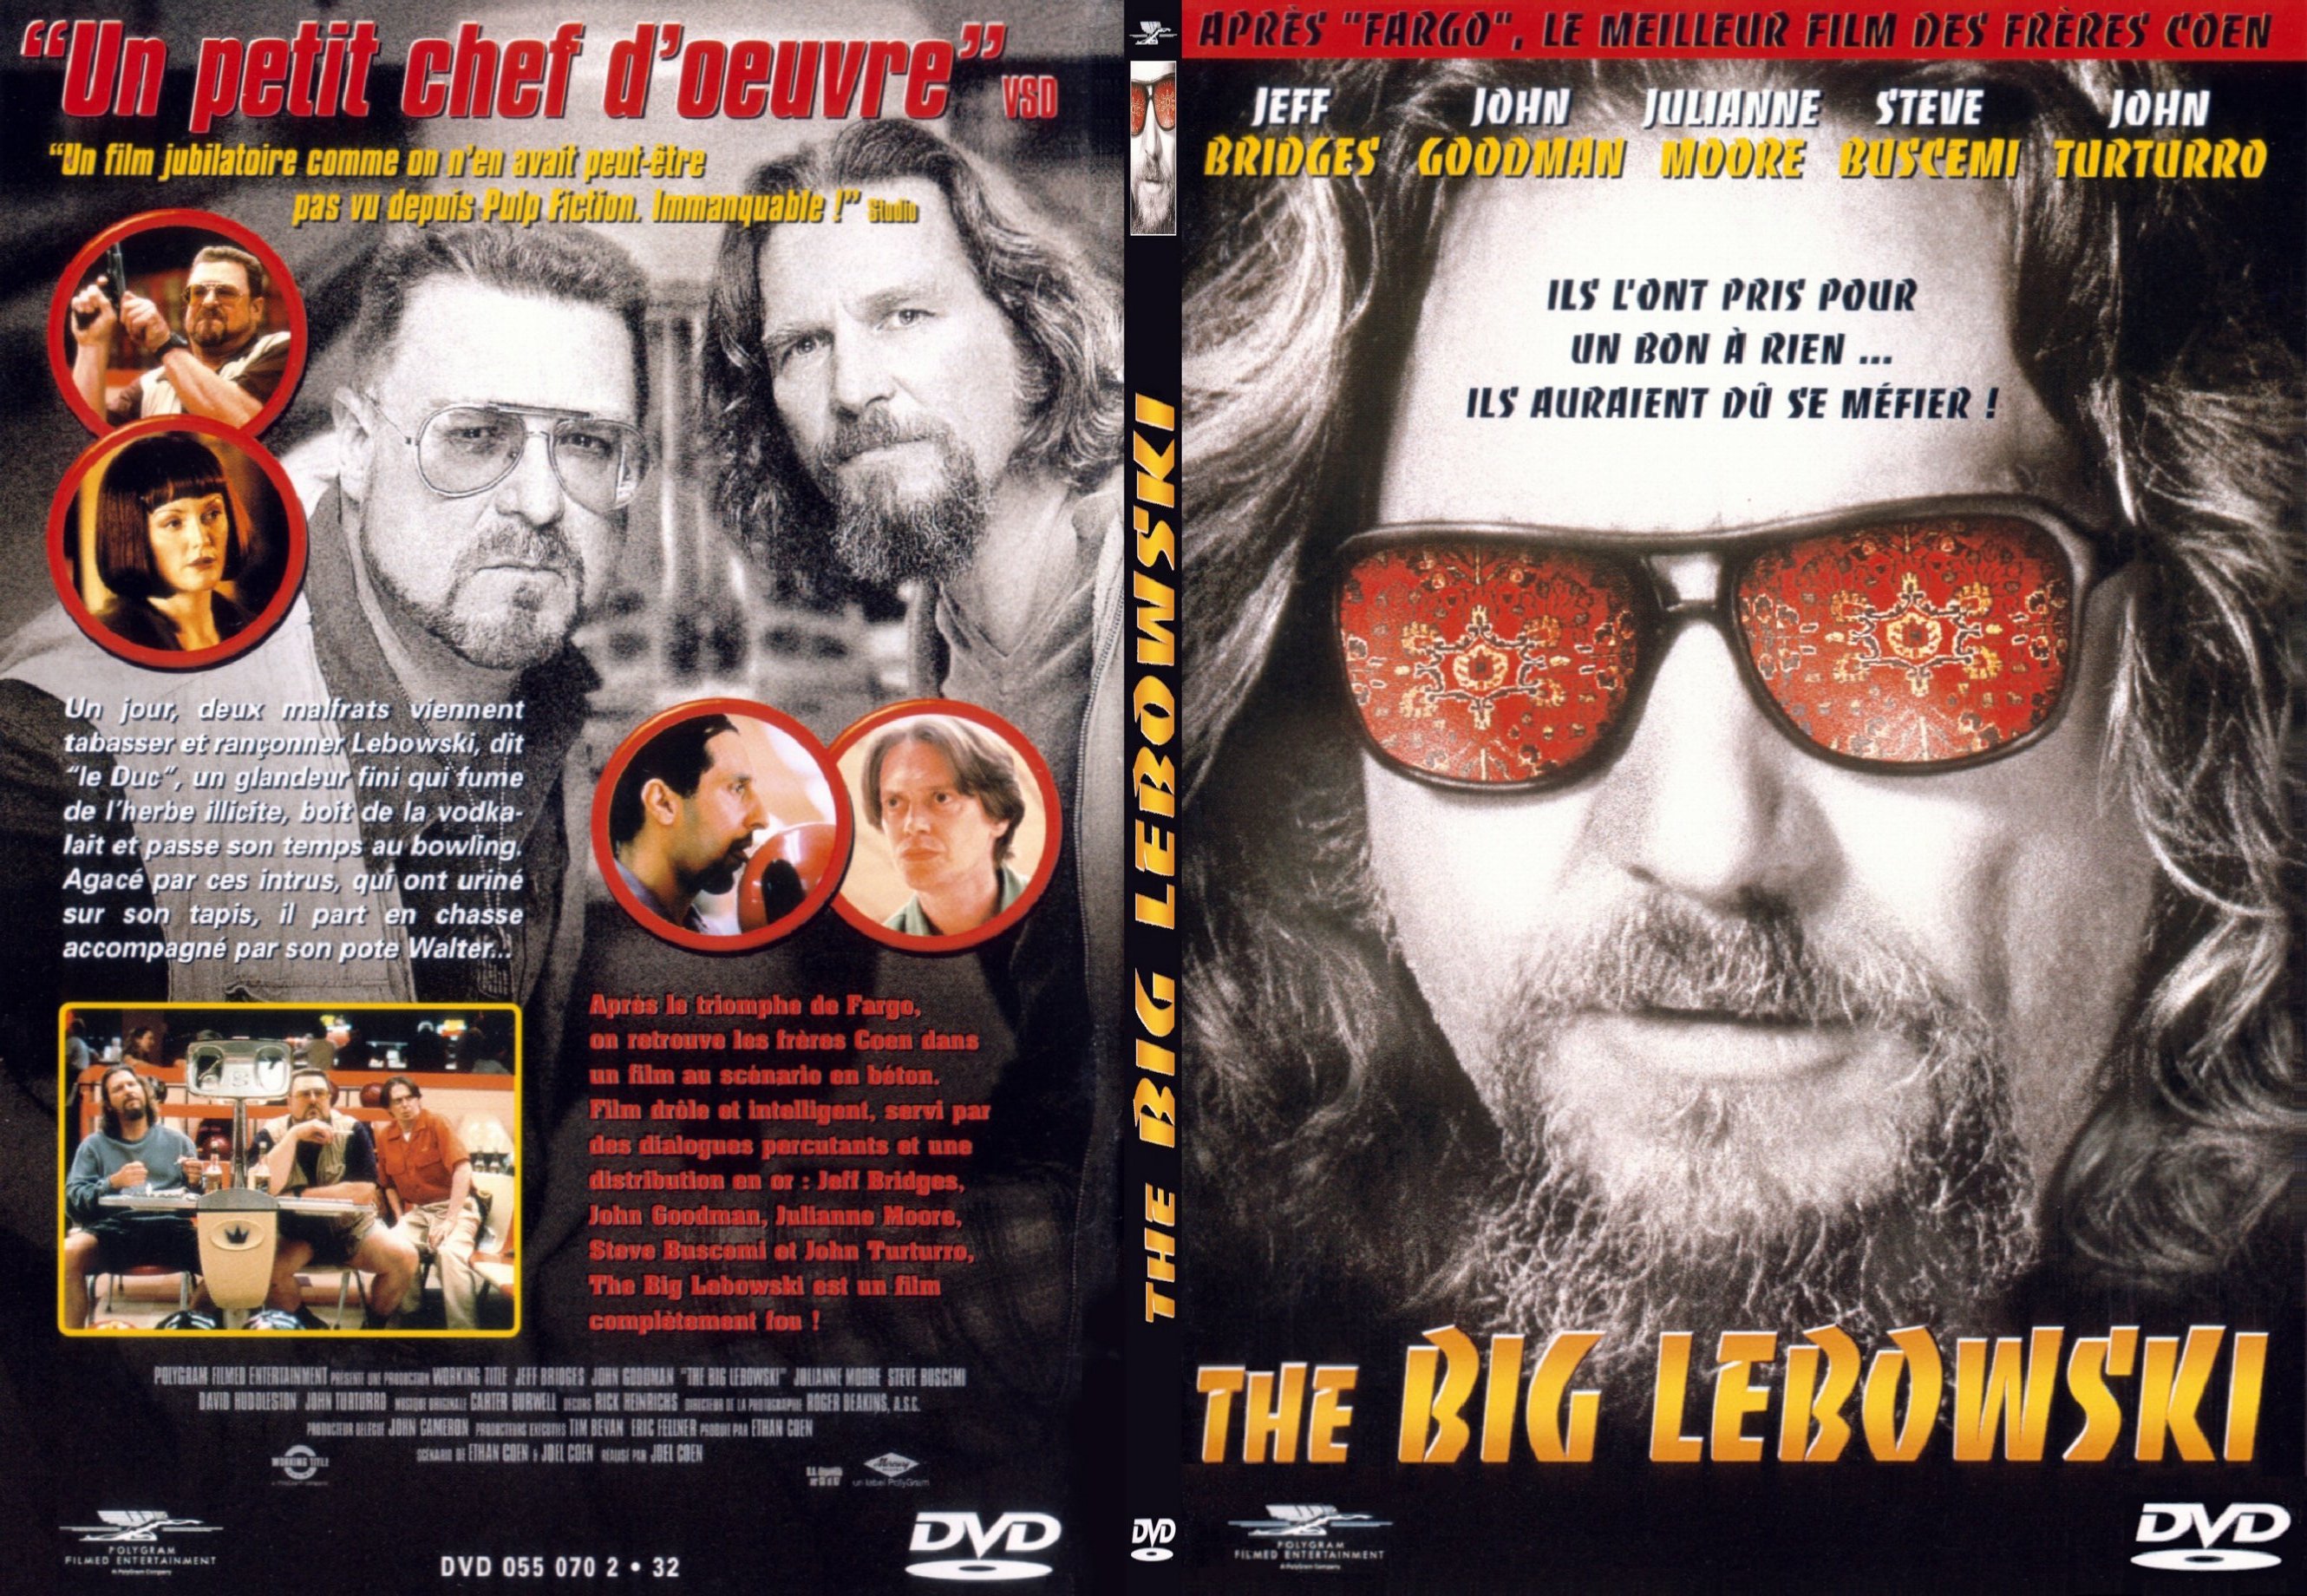 Jaquette DVD The big lebowski - SLIM v2